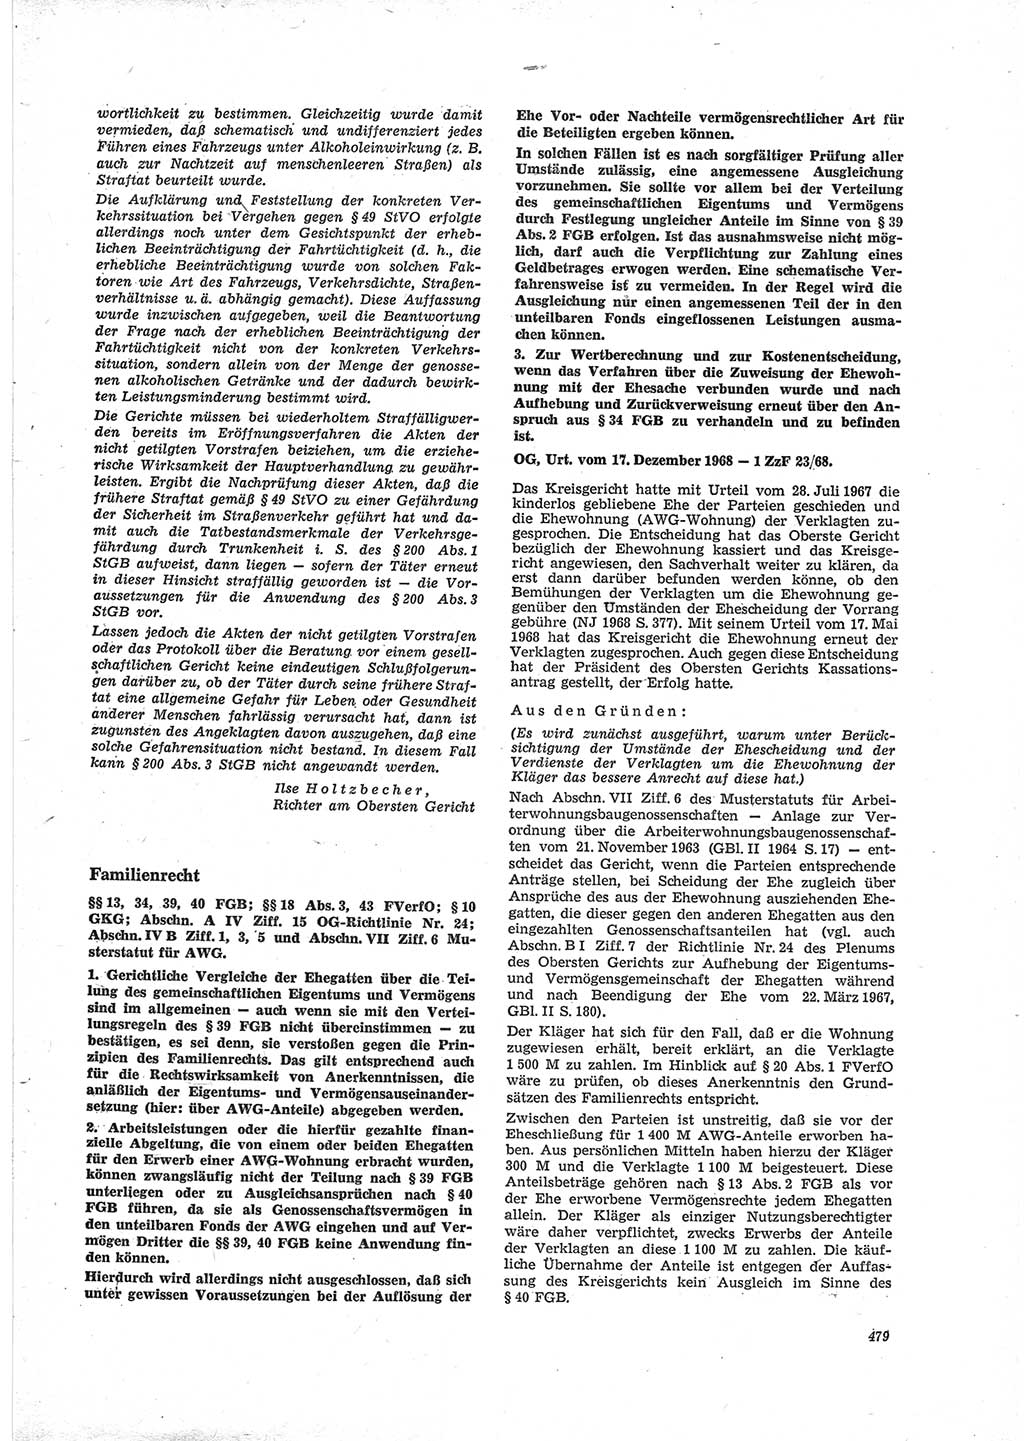 Neue Justiz (NJ), Zeitschrift für Recht und Rechtswissenschaft [Deutsche Demokratische Republik (DDR)], 23. Jahrgang 1969, Seite 479 (NJ DDR 1969, S. 479)